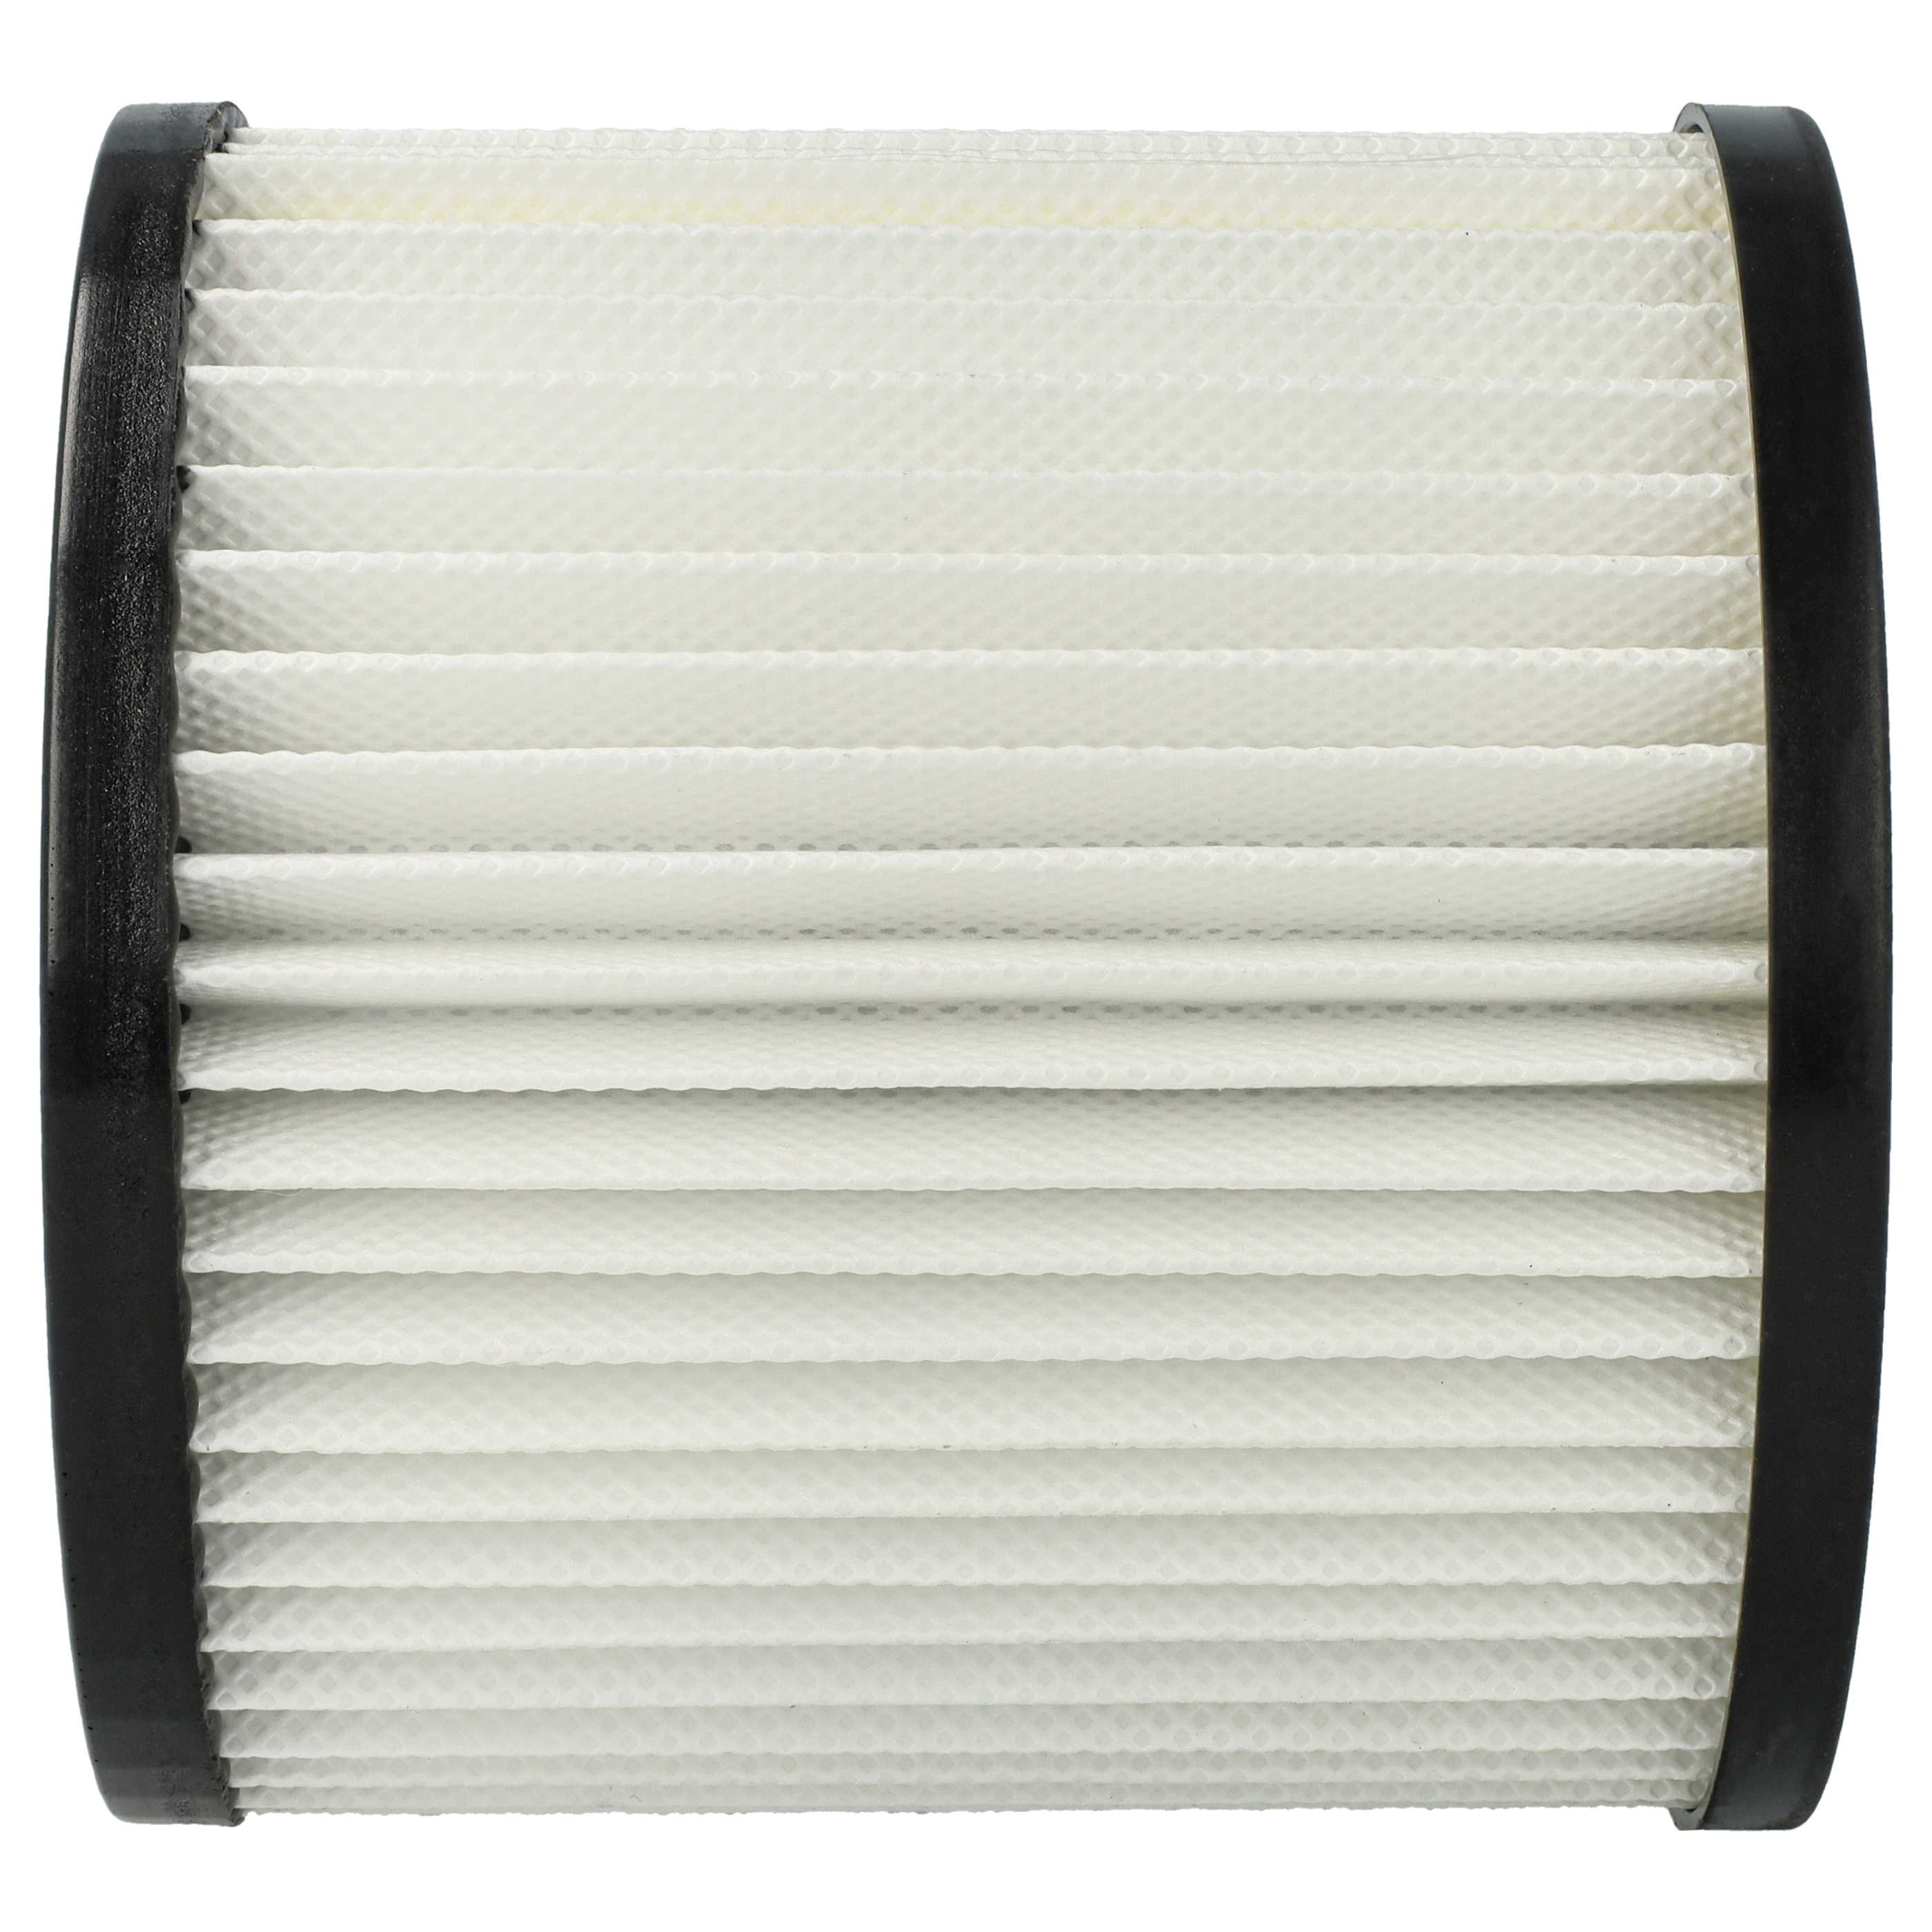 3x Filtro sostituisce Scheppach 7907702702 per aspirapolvere - filtro HEPA, bianco